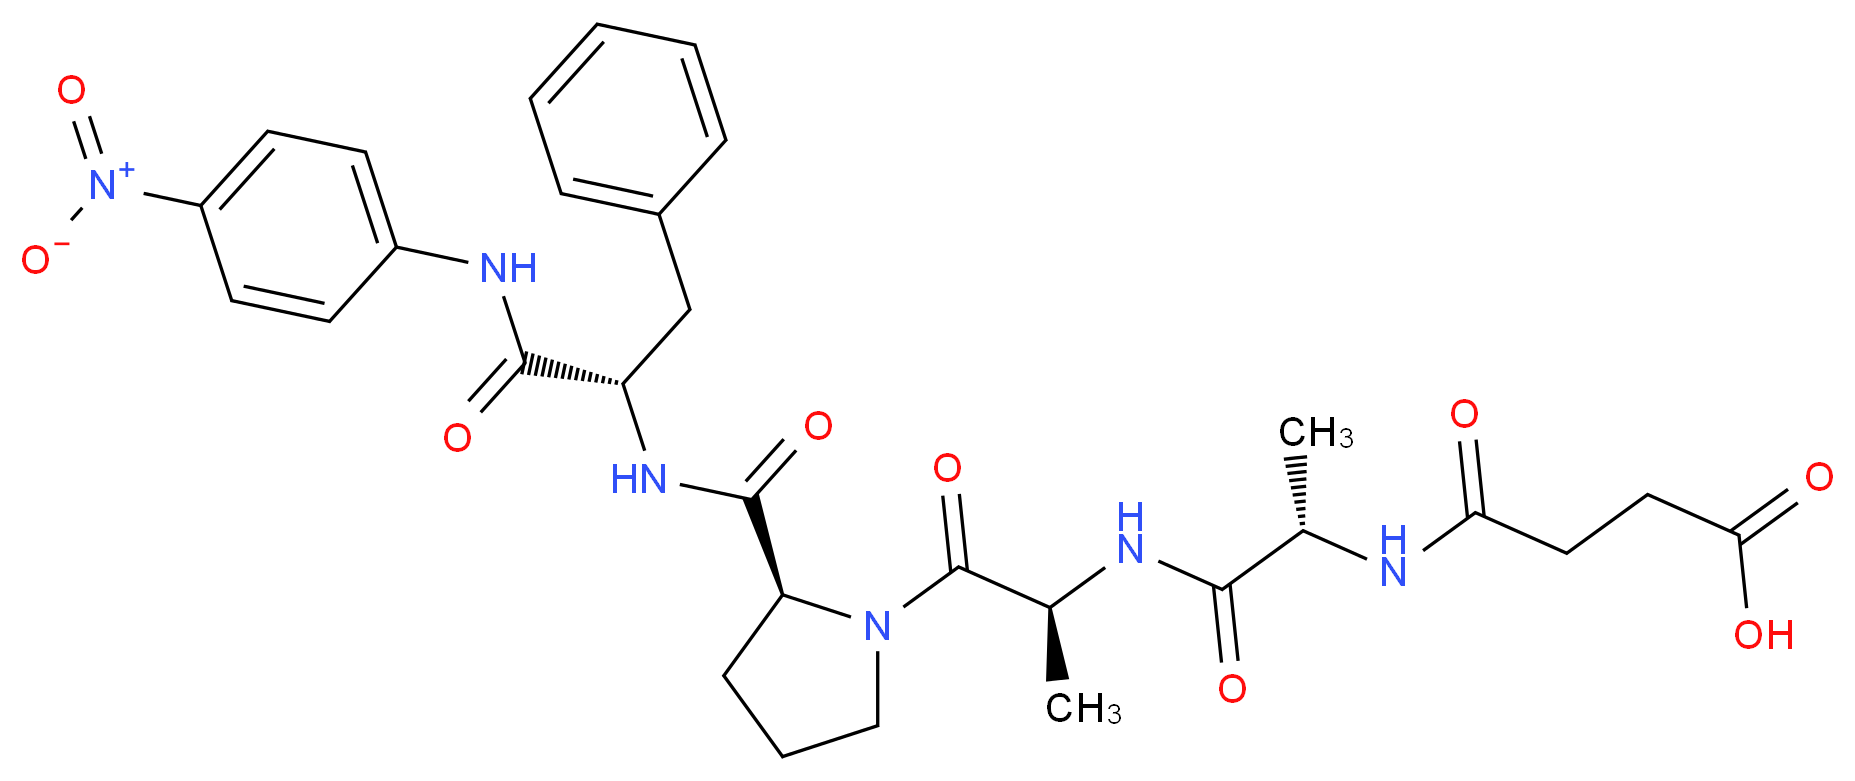 Suc-Ala-Ala-Pro-Phe-paranitroanilide_Molecular_structure_CAS_70967-97-4)